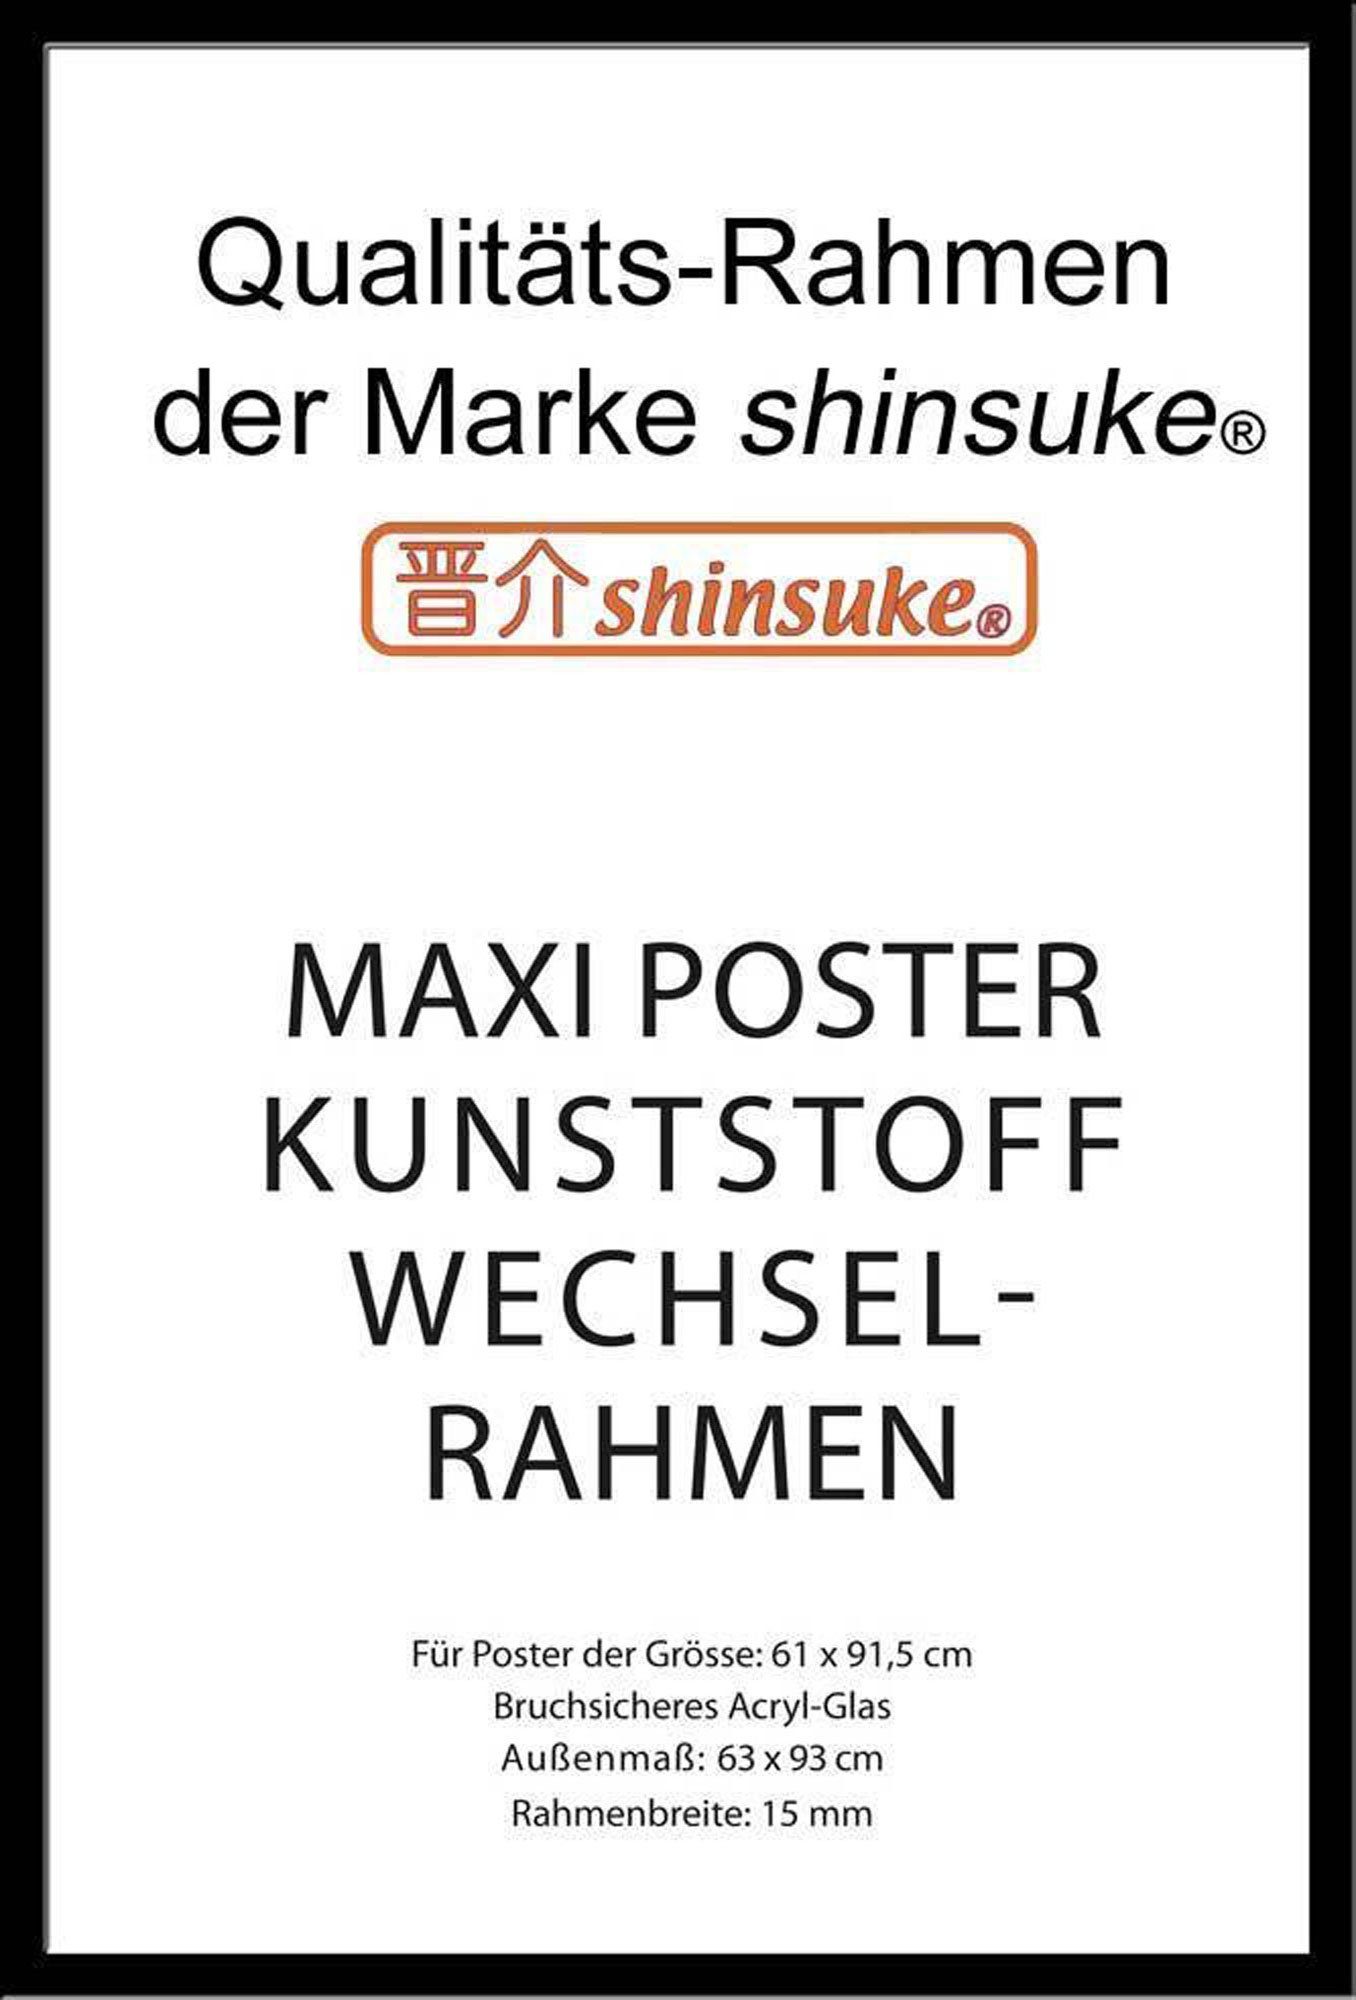 mit empireposter Acryl-Scheibe schwarz Wechselrahmen Rahmen Kunststoff 61x91,5cm, Maxi-Poster Shinsuke® 15mm Farbe Profil: Posterrahmen